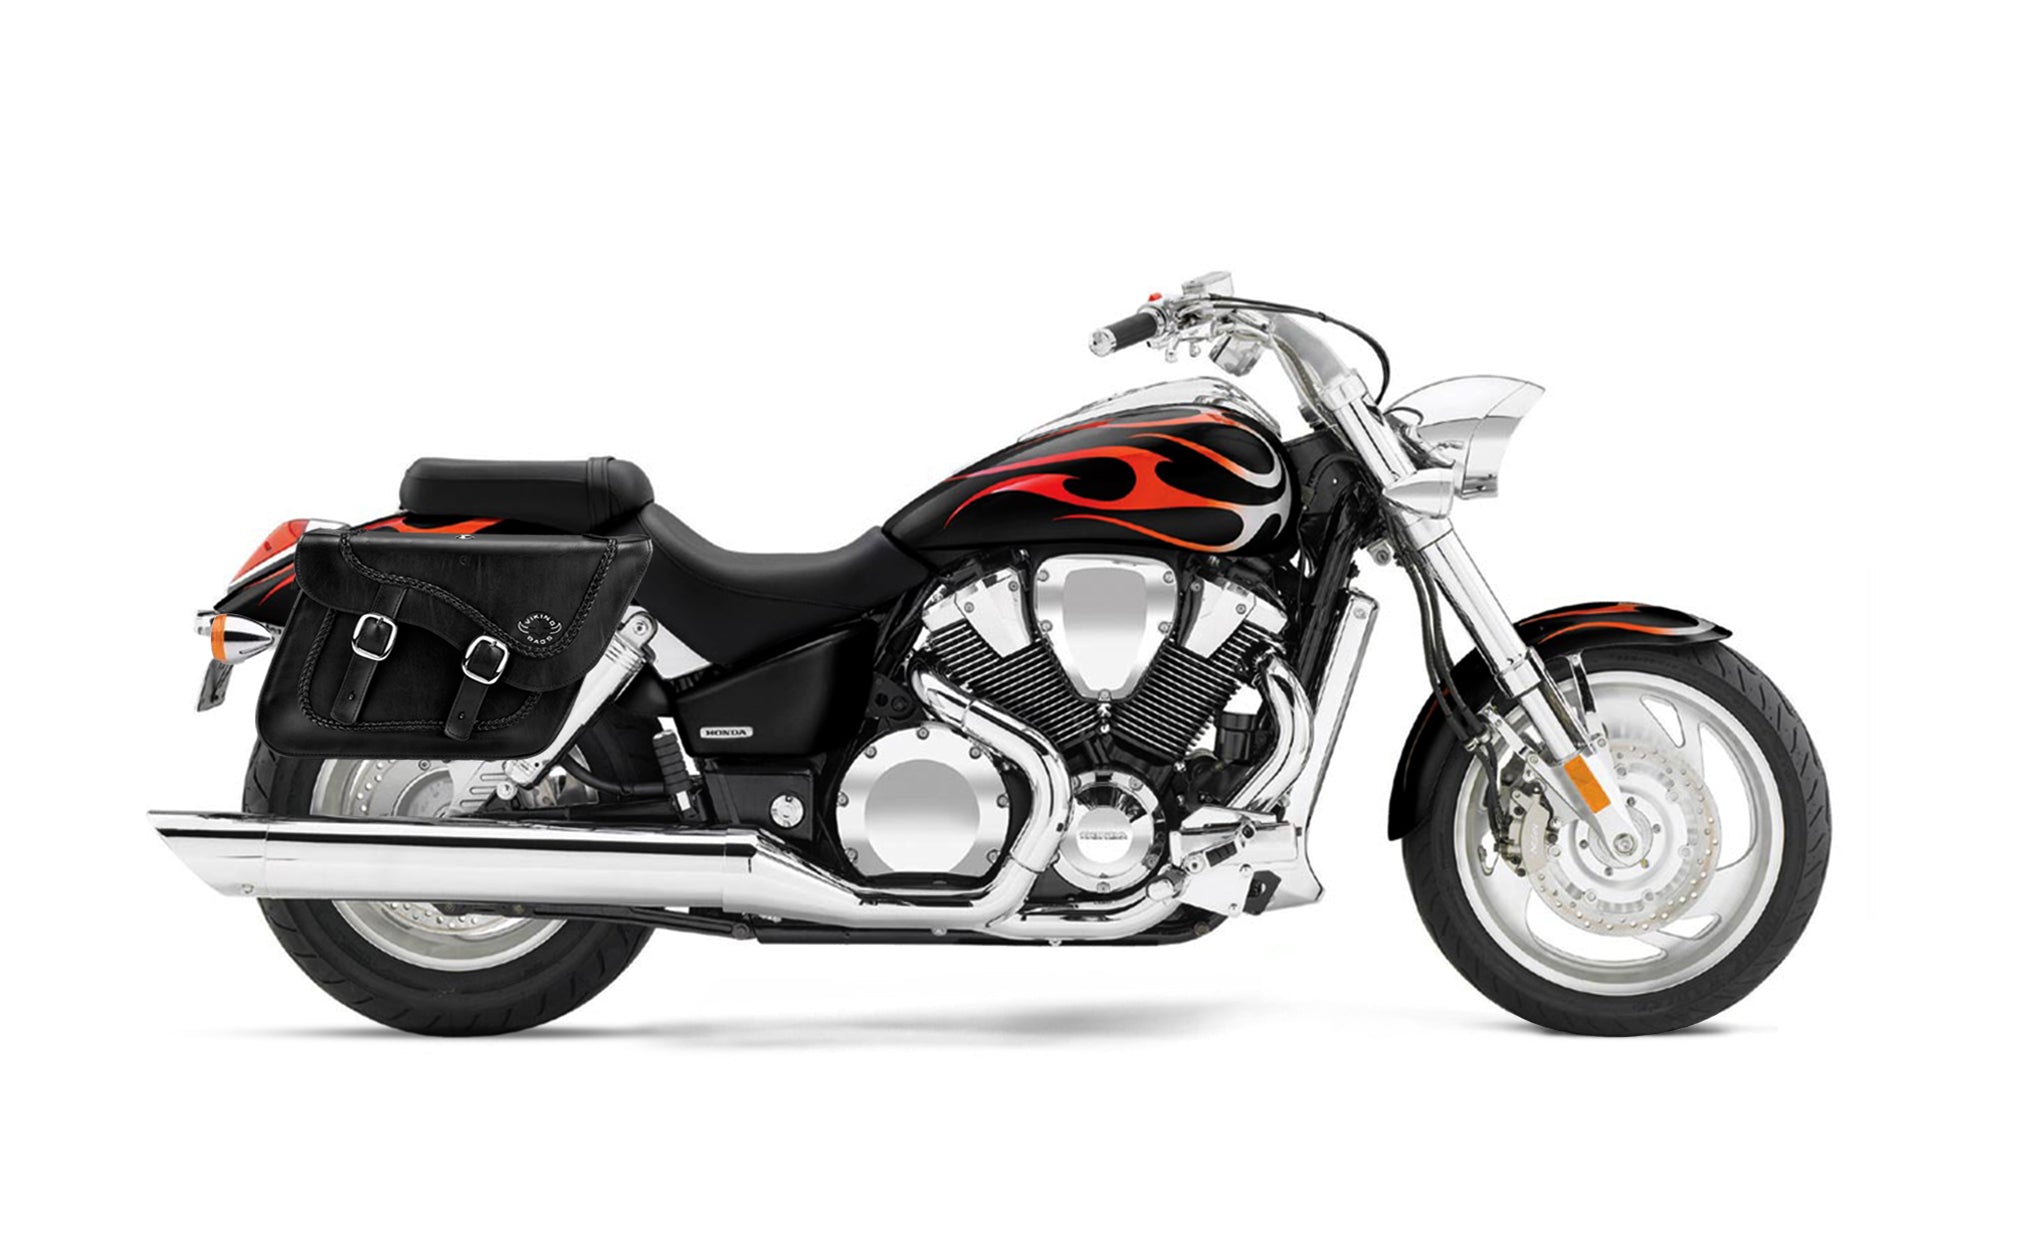 Viking Americano Honda Vtx 1800 C Braided Large Leather Motorcycle Saddlebags on Bike Photo @expand